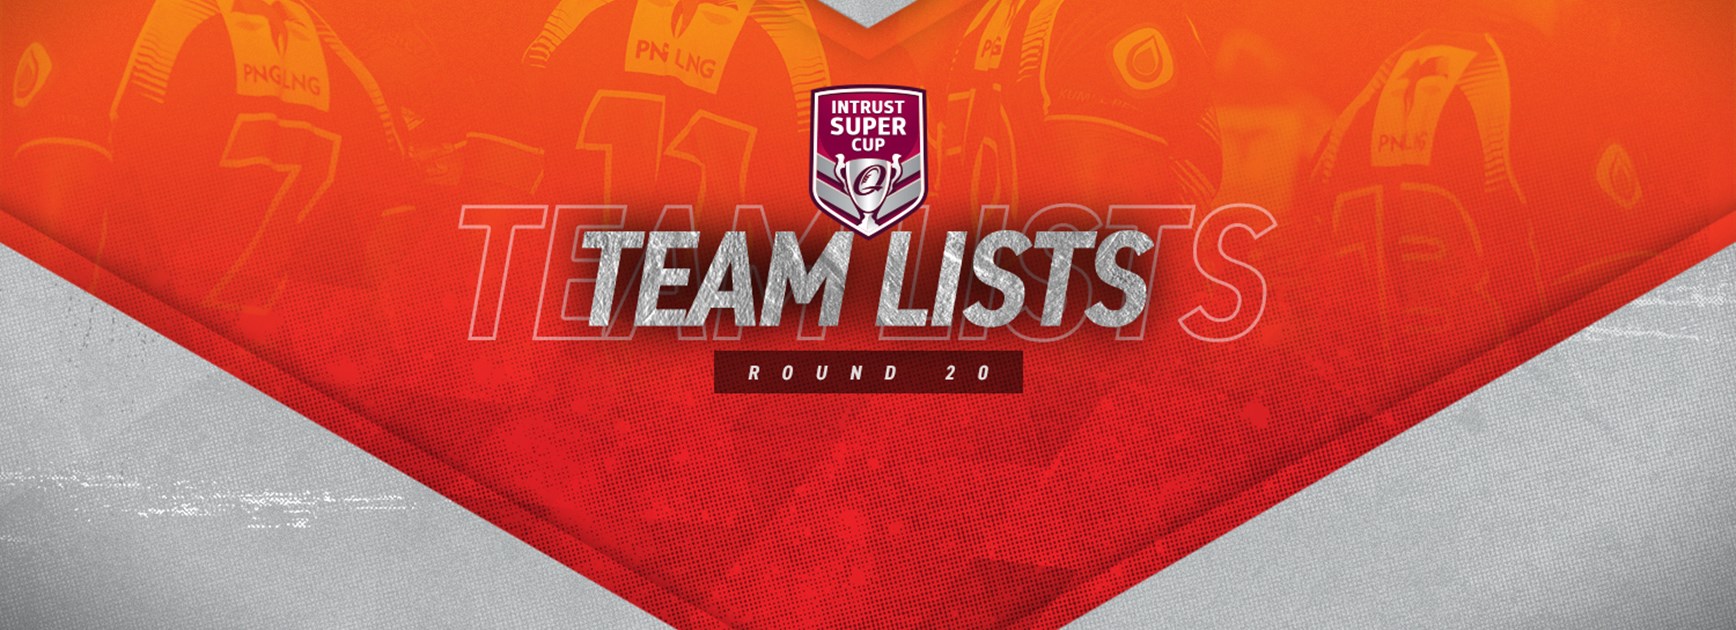 Intrust Super Cup Round 20 teams